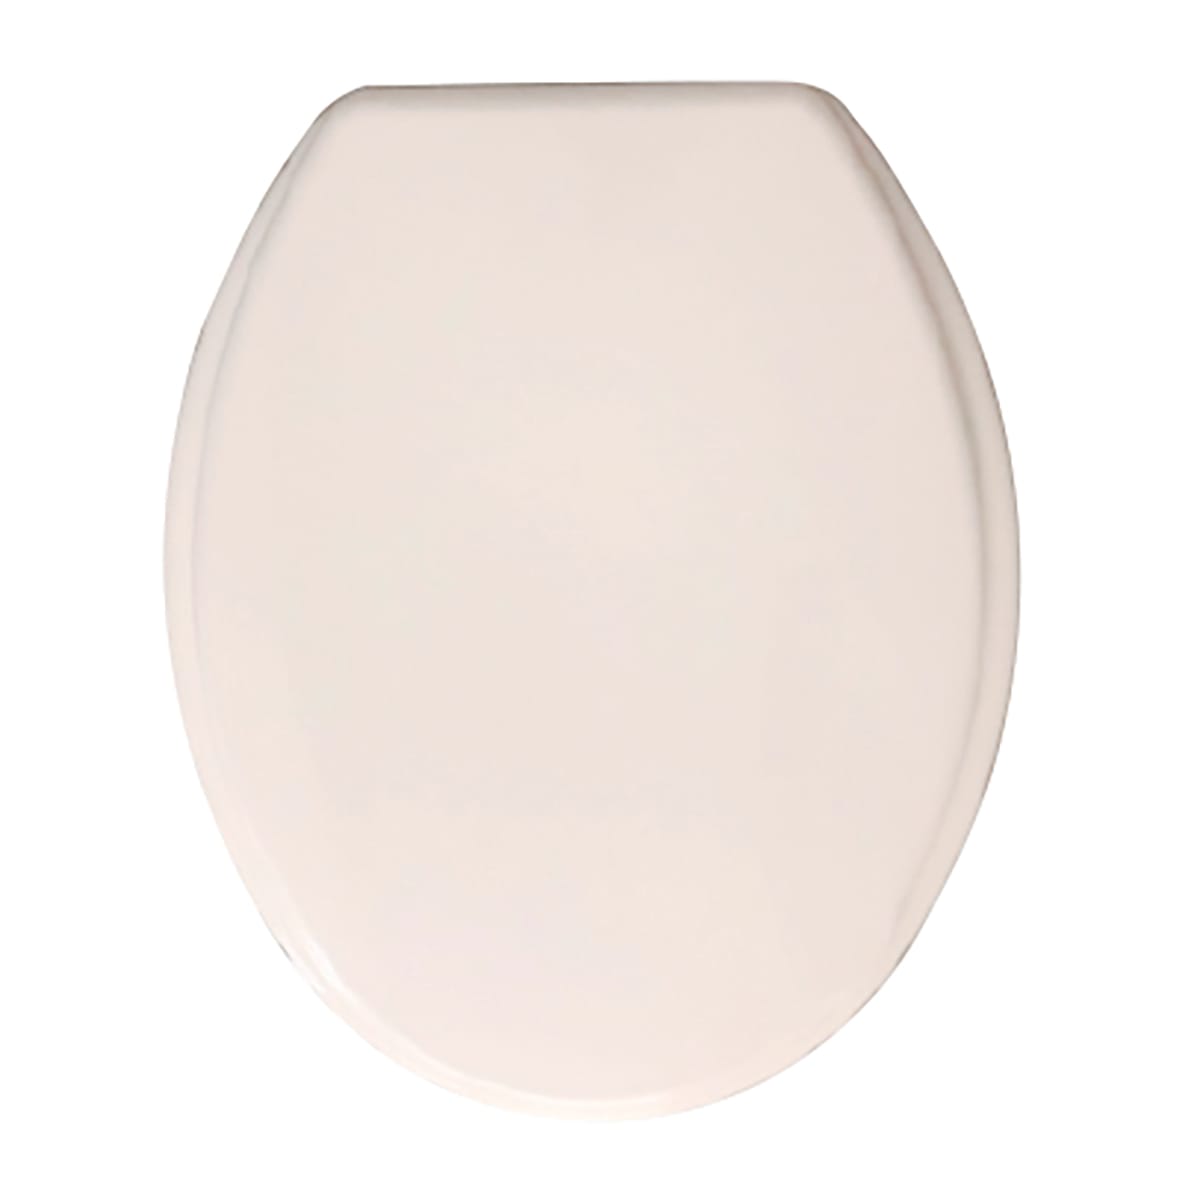 STANDARD WC SEAT CORTINA PLASTIC WHITE CERNIRE NYLON